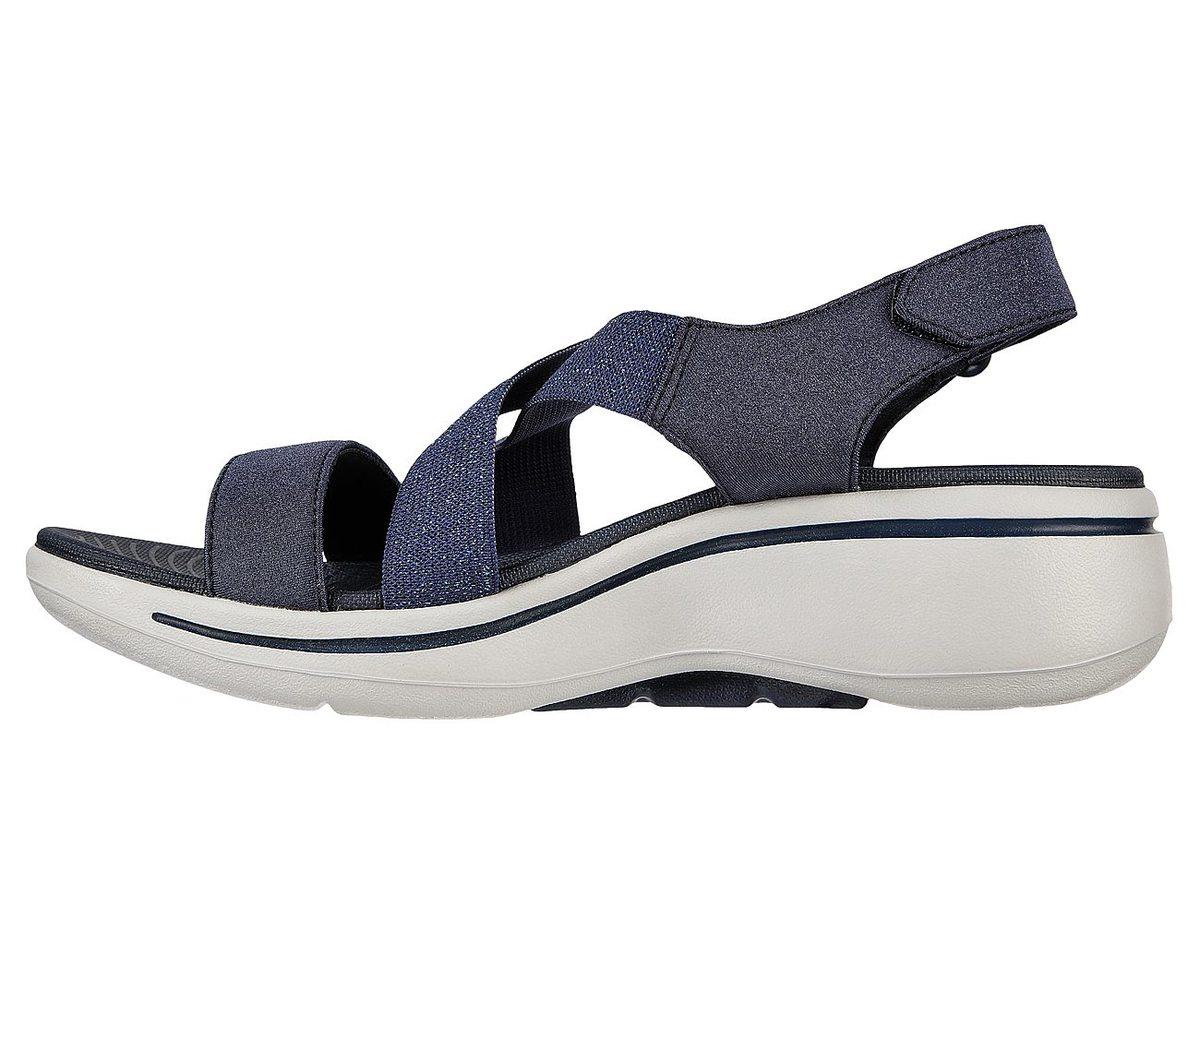 Clarks Collection Ultimate Comfort Platform Sandals Sz 10 Casual Flower  Sandal | eBay